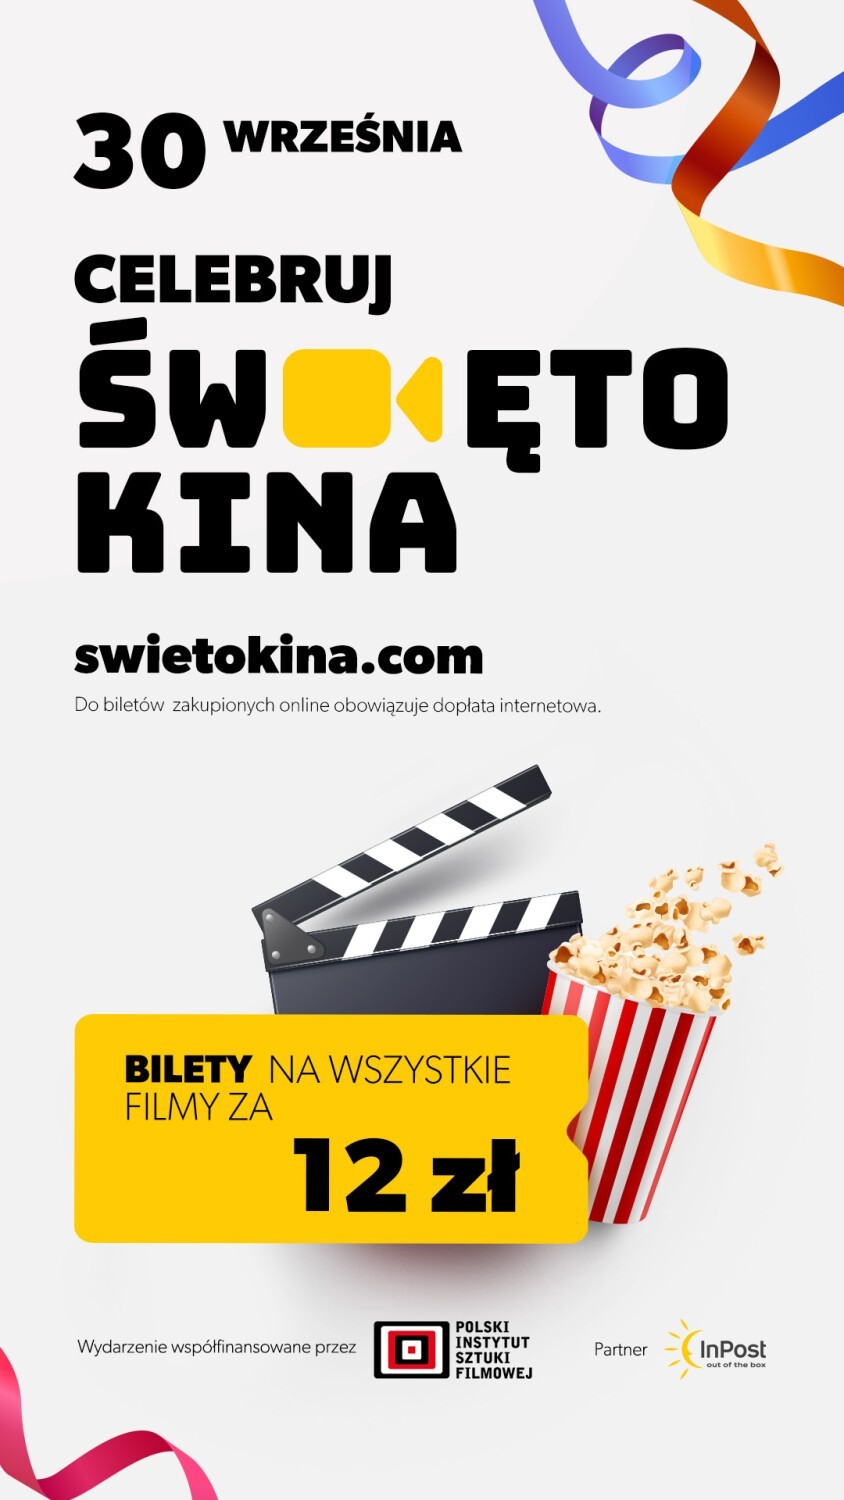 ŚWIĘTO KINA JUŻ 30 WRZEŚNIA! Bilety tylko 12 zł w ponad 230 kinach w Polsce!